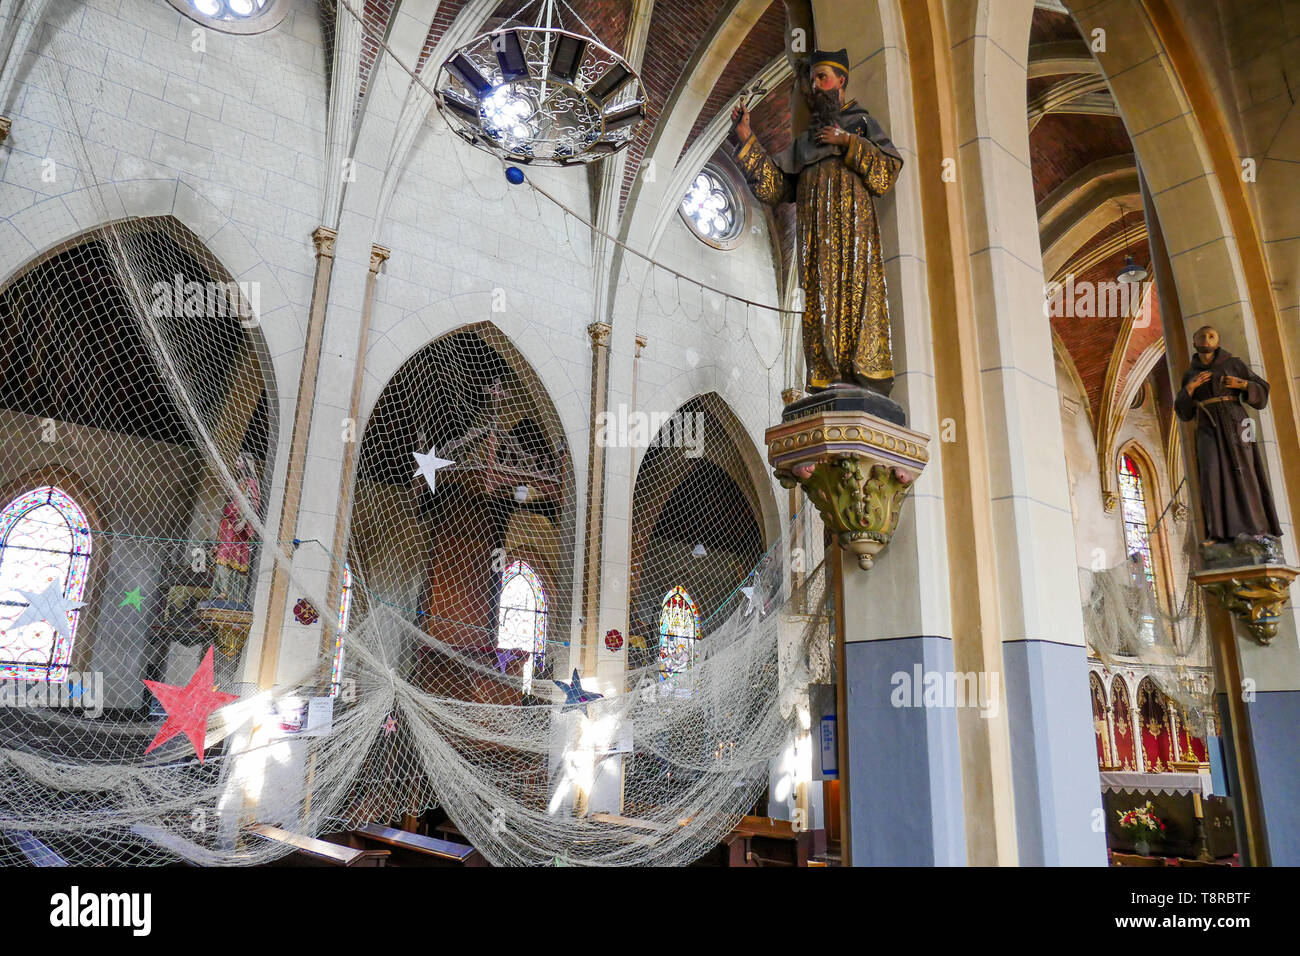 Fishnets, Saint-Pierre du Crotois church, Le Crotois, Bay of Somme,  Hauts-de-France, France Stock Photo